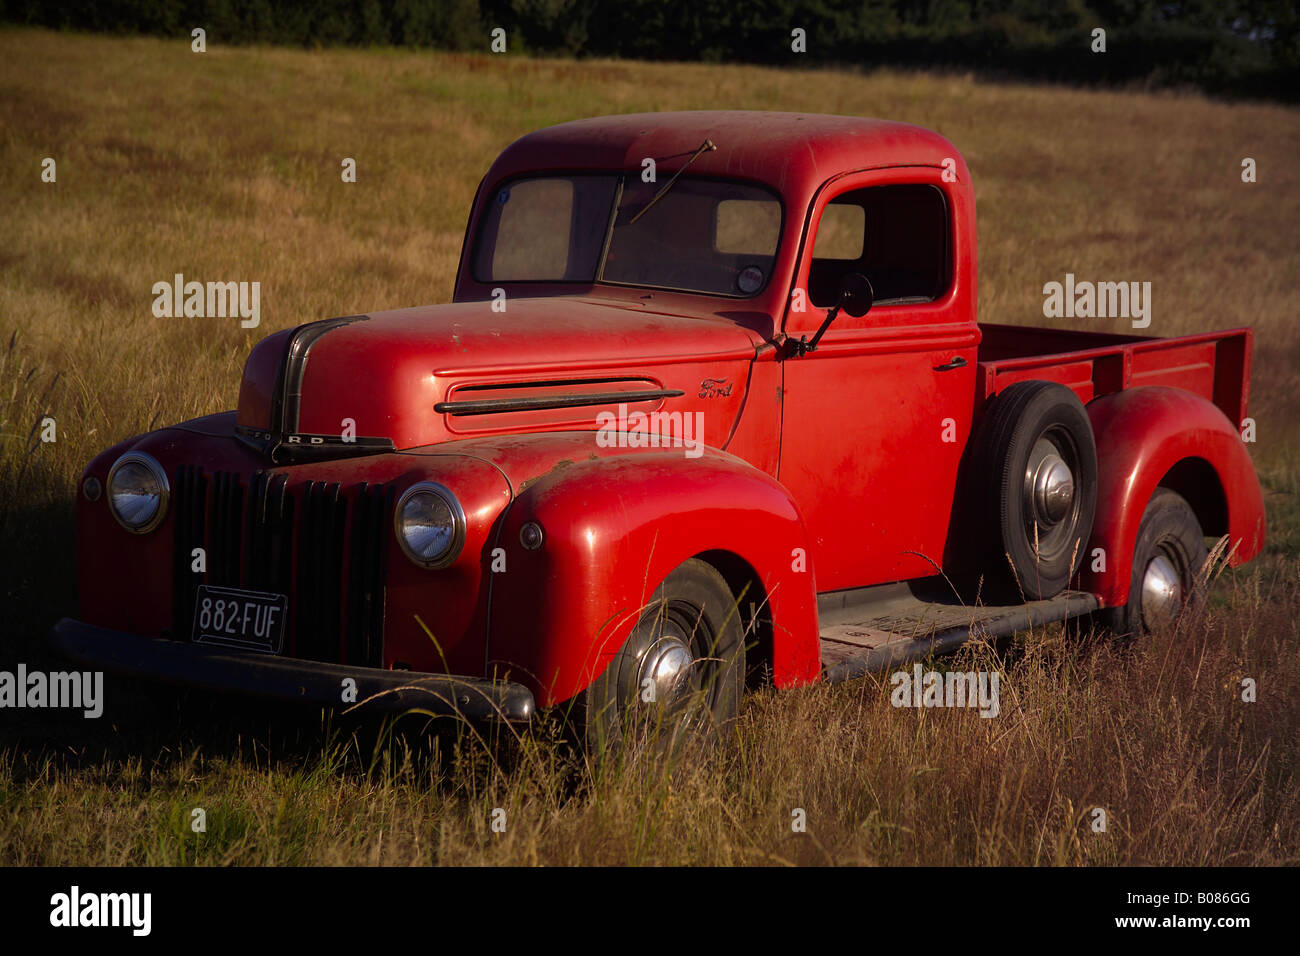 Vue de face d'une vieille Ford rouge américaine camion pick-up Banque D'Images